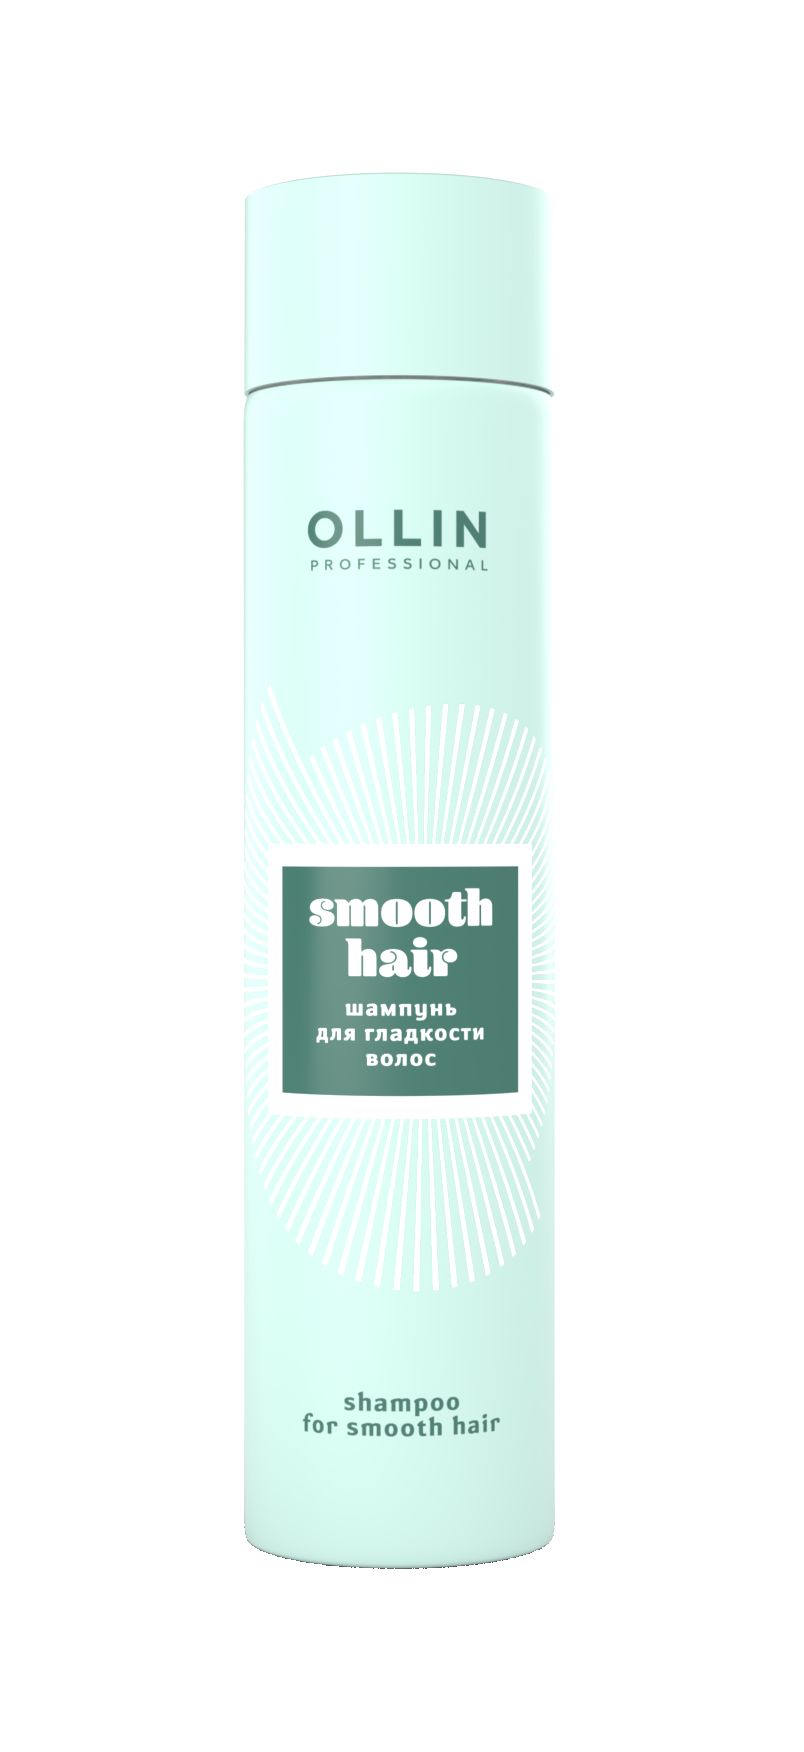 Ollin Smooth Hair Shampoo 79391